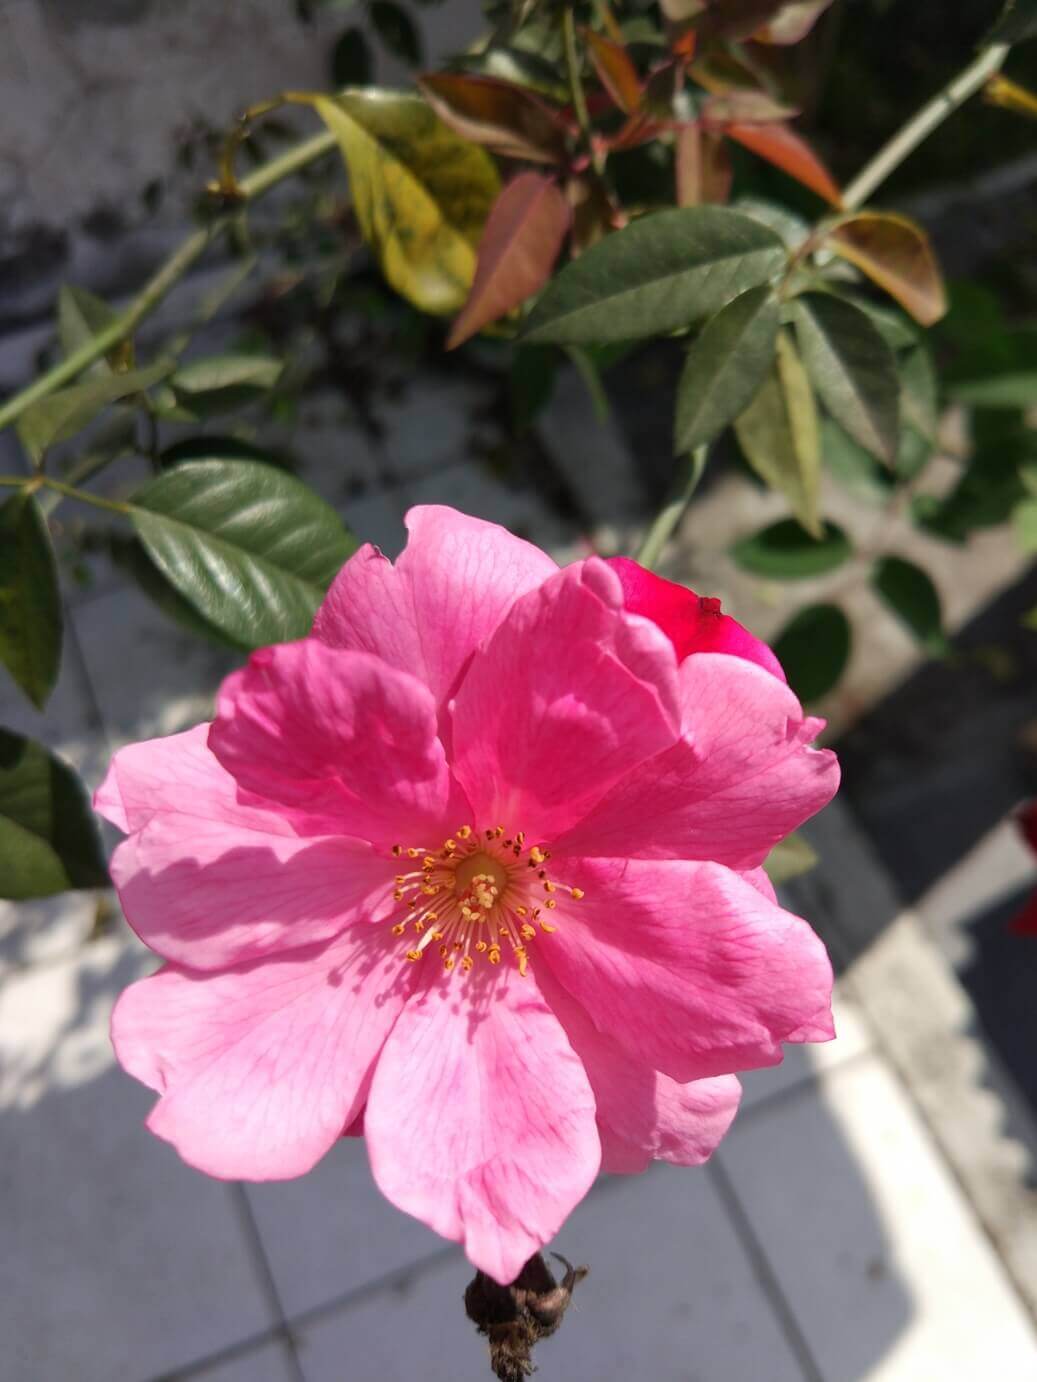 Foto de uma flor cor rosa feita com câmera do Xiaomi Mi5